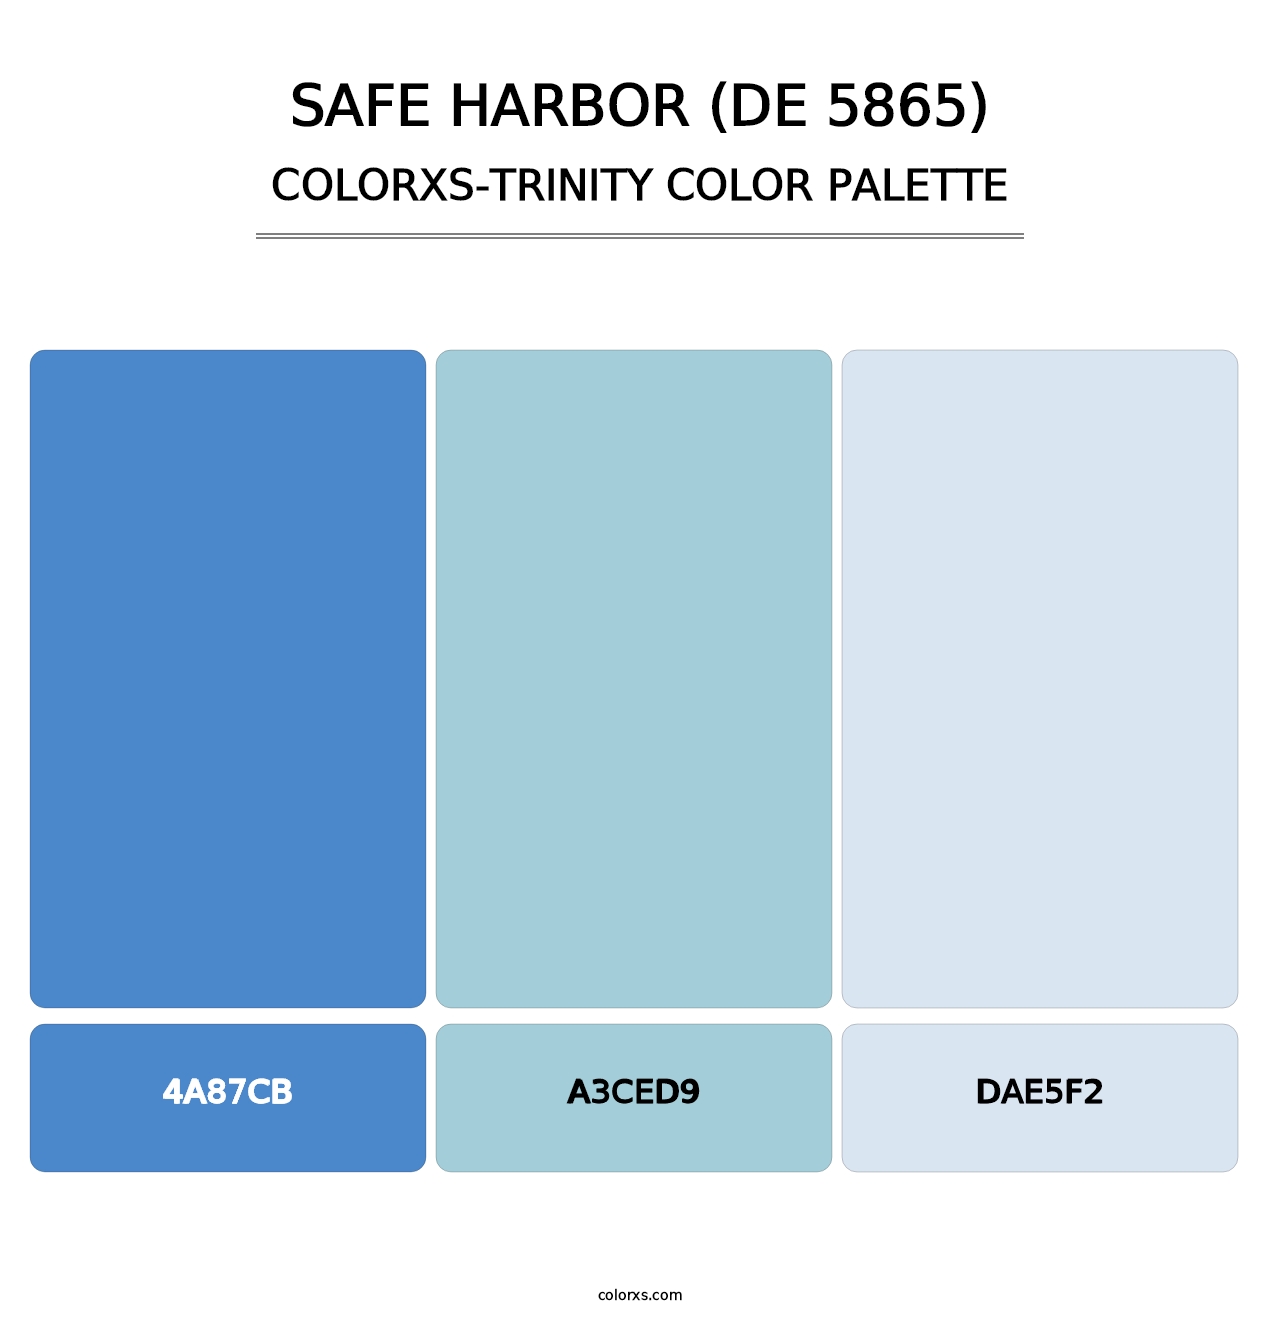 Safe Harbor (DE 5865) - Colorxs Trinity Palette